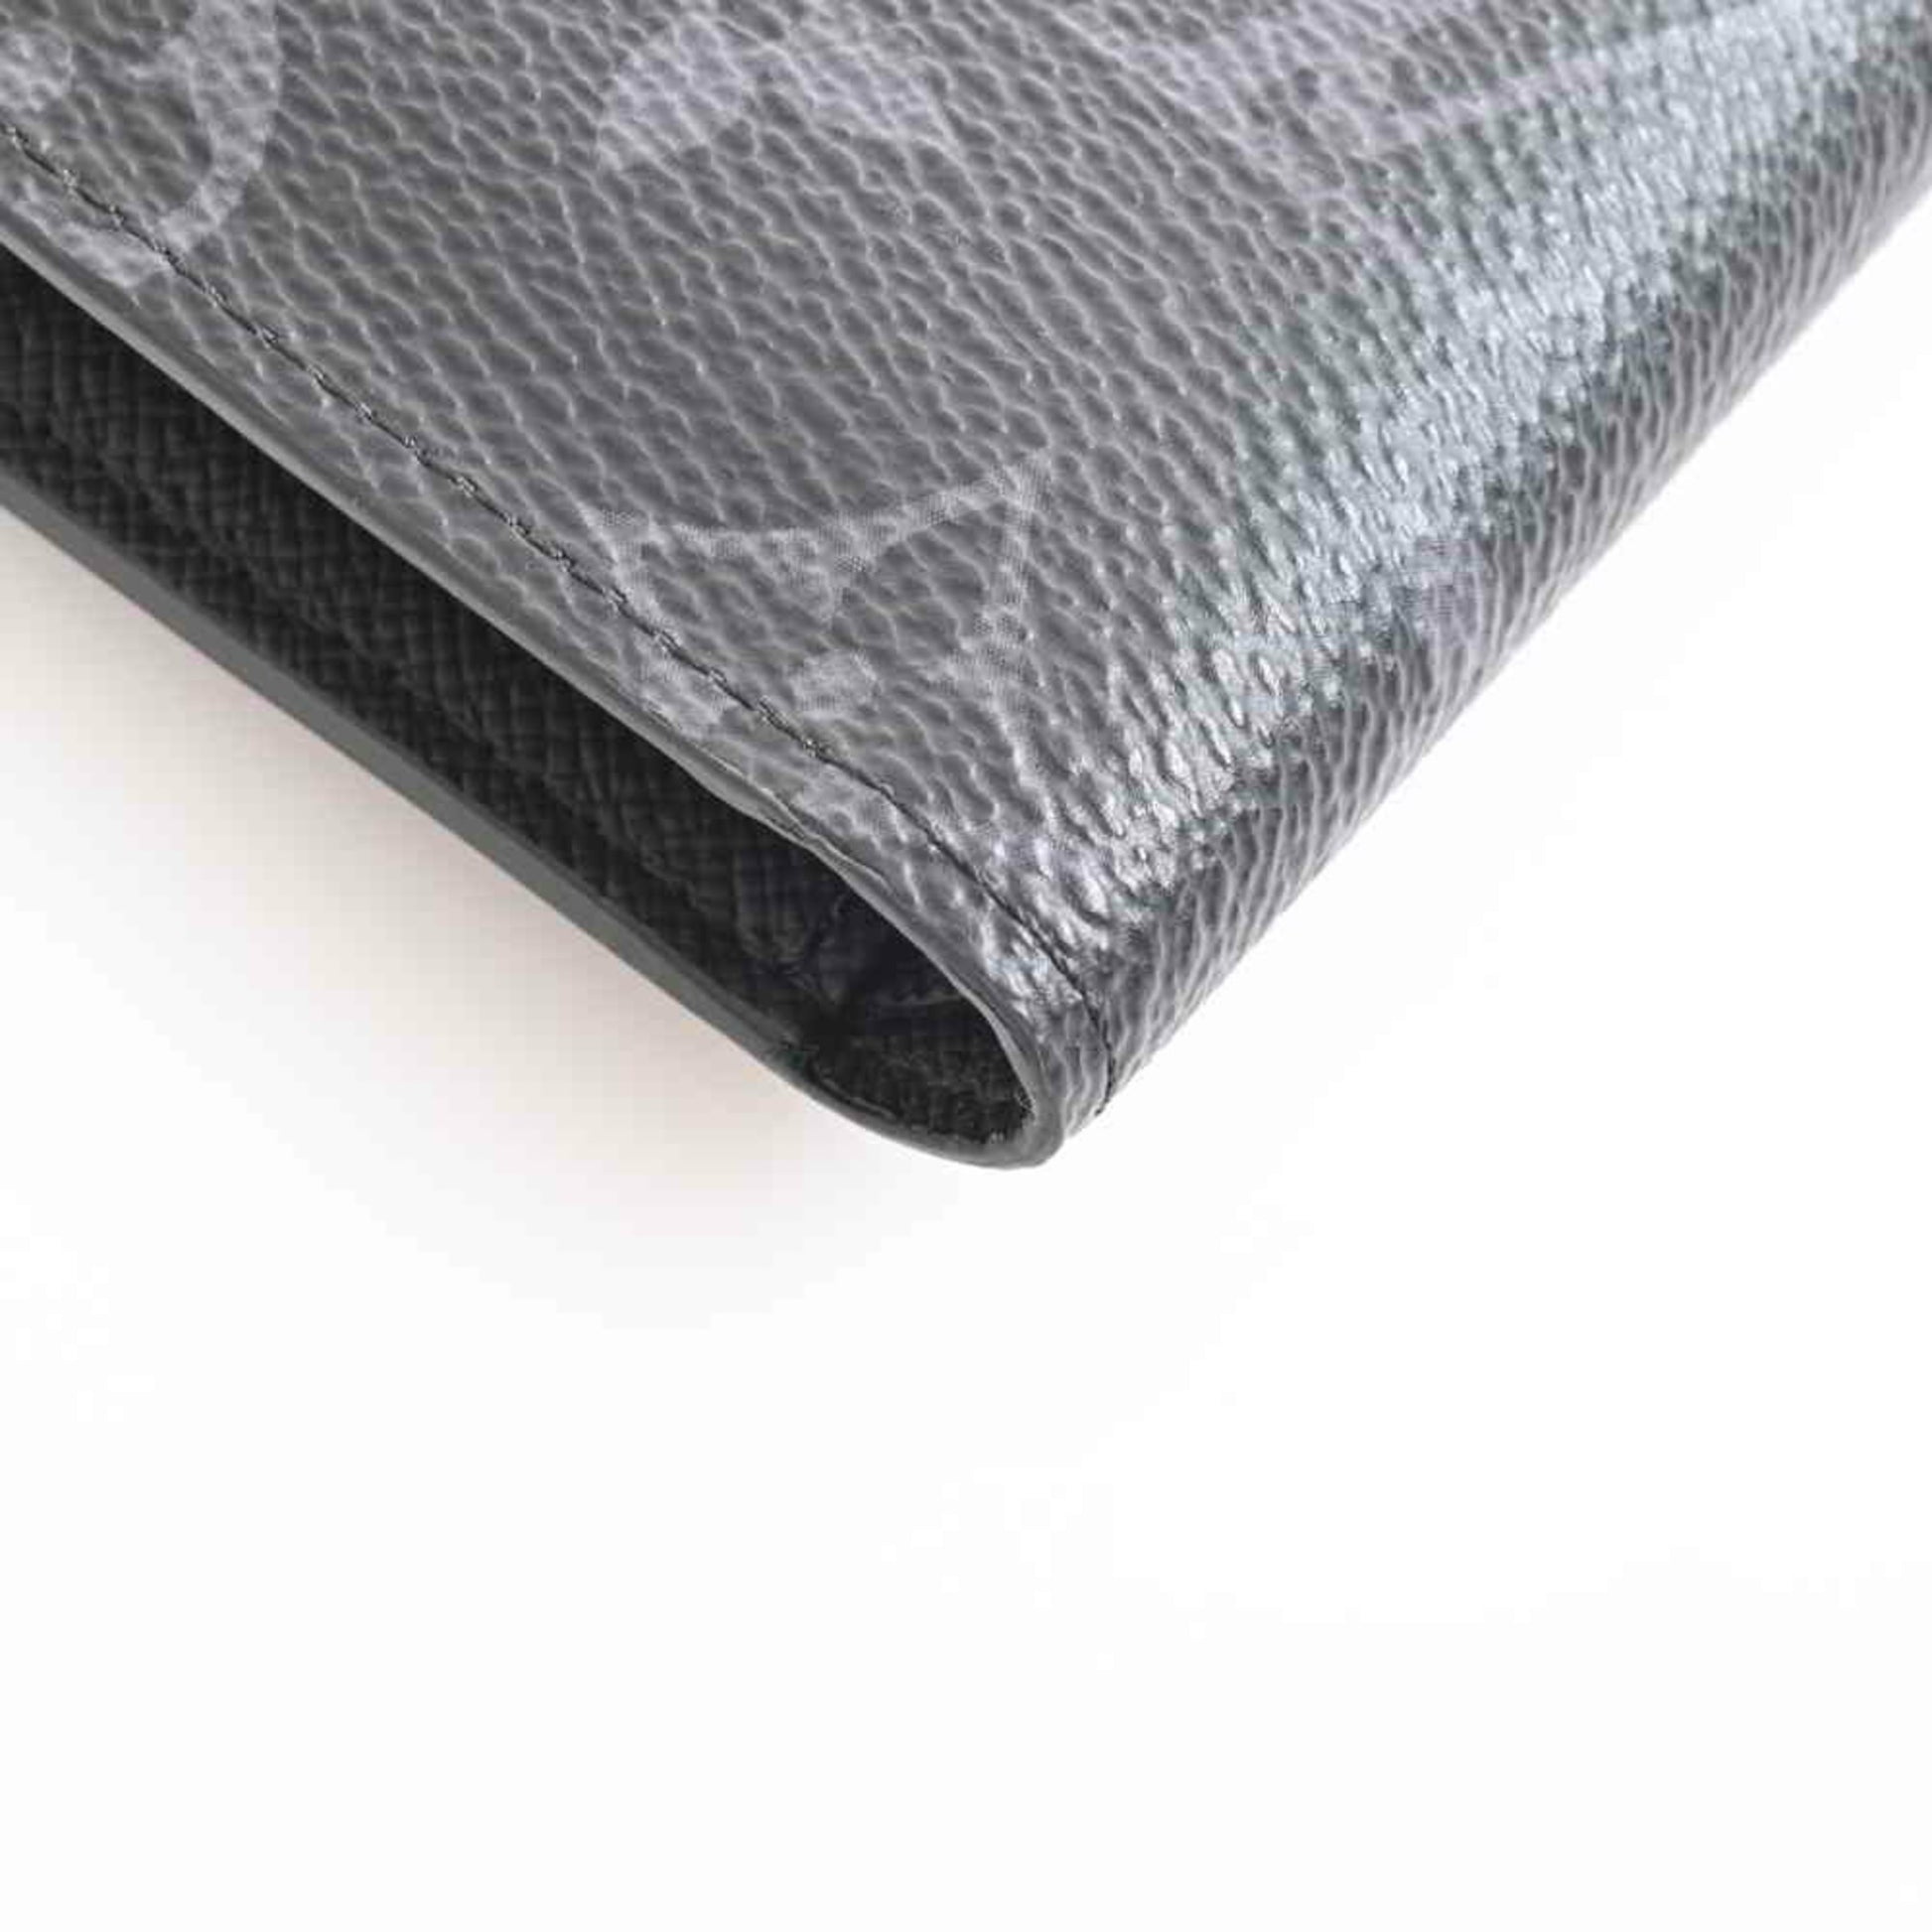 Louis Vuitton Eclipse Portefeuille Marco NM Bifold Wallet Black PVC